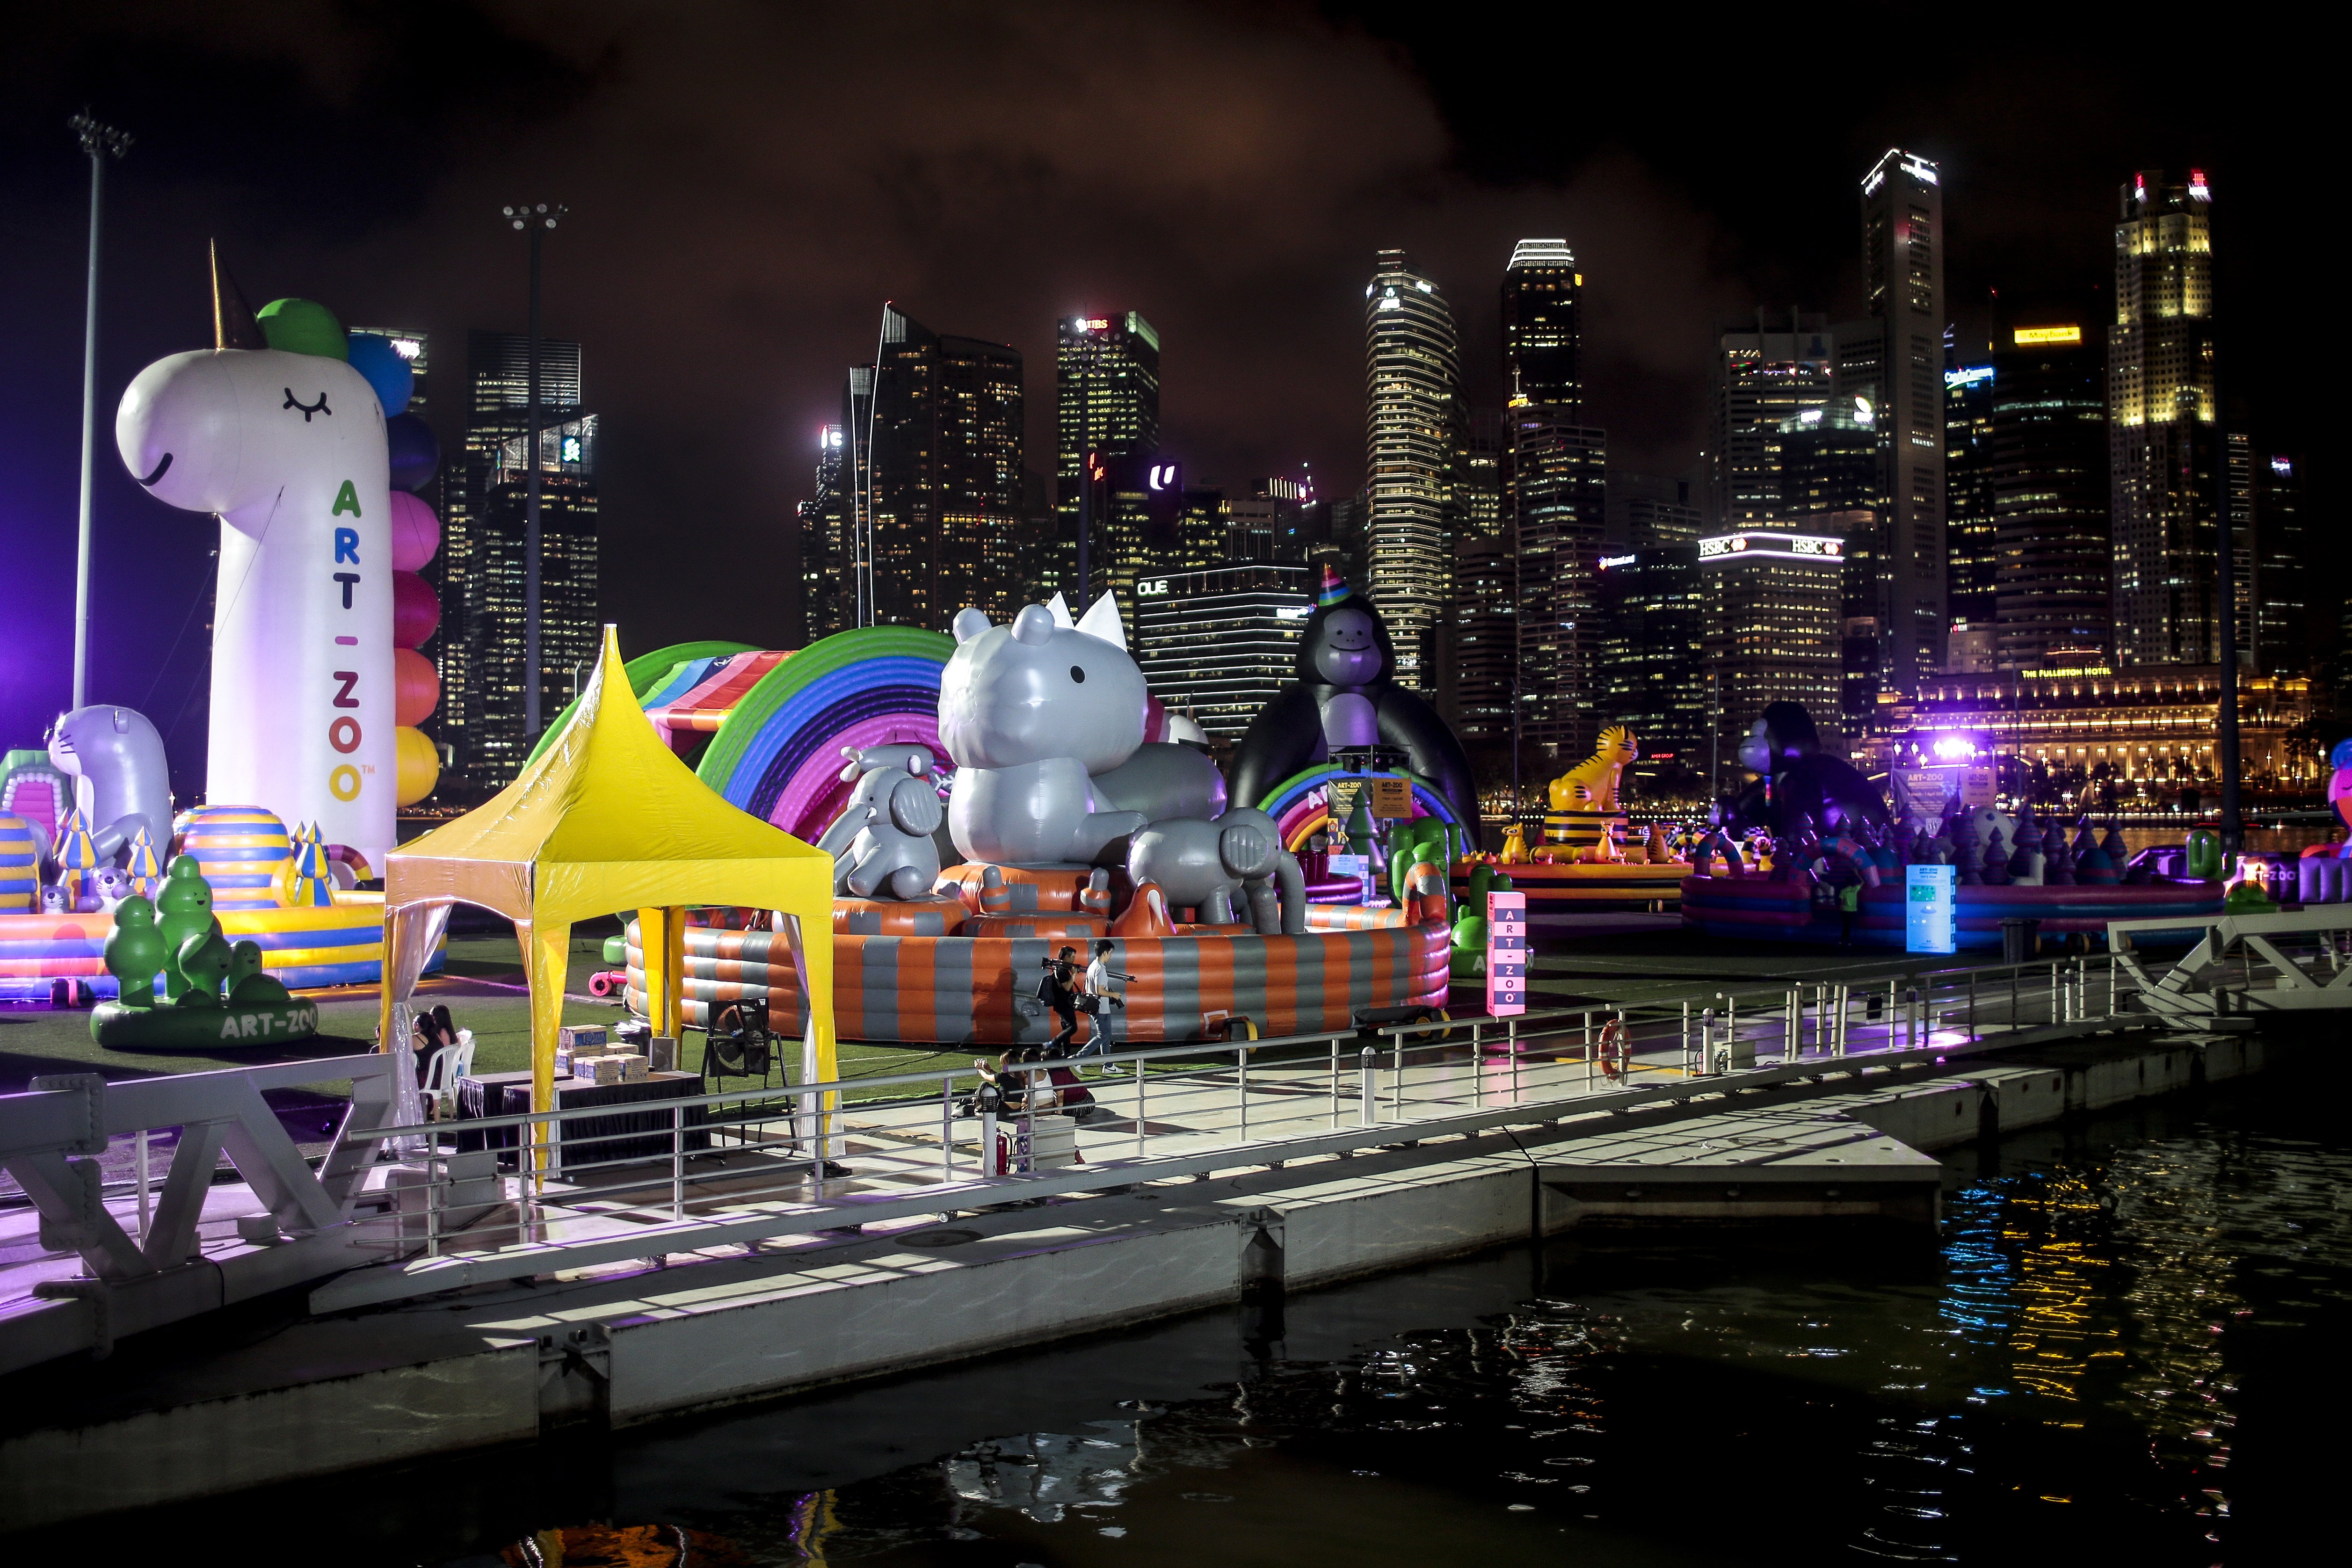 Надуваемият Art Zoo Park в залива Марина Бей в Сингапур, разполага с различни гигантски надуваеми животни и ще бъде отворен за посещение от 9 март до 1 април 2018